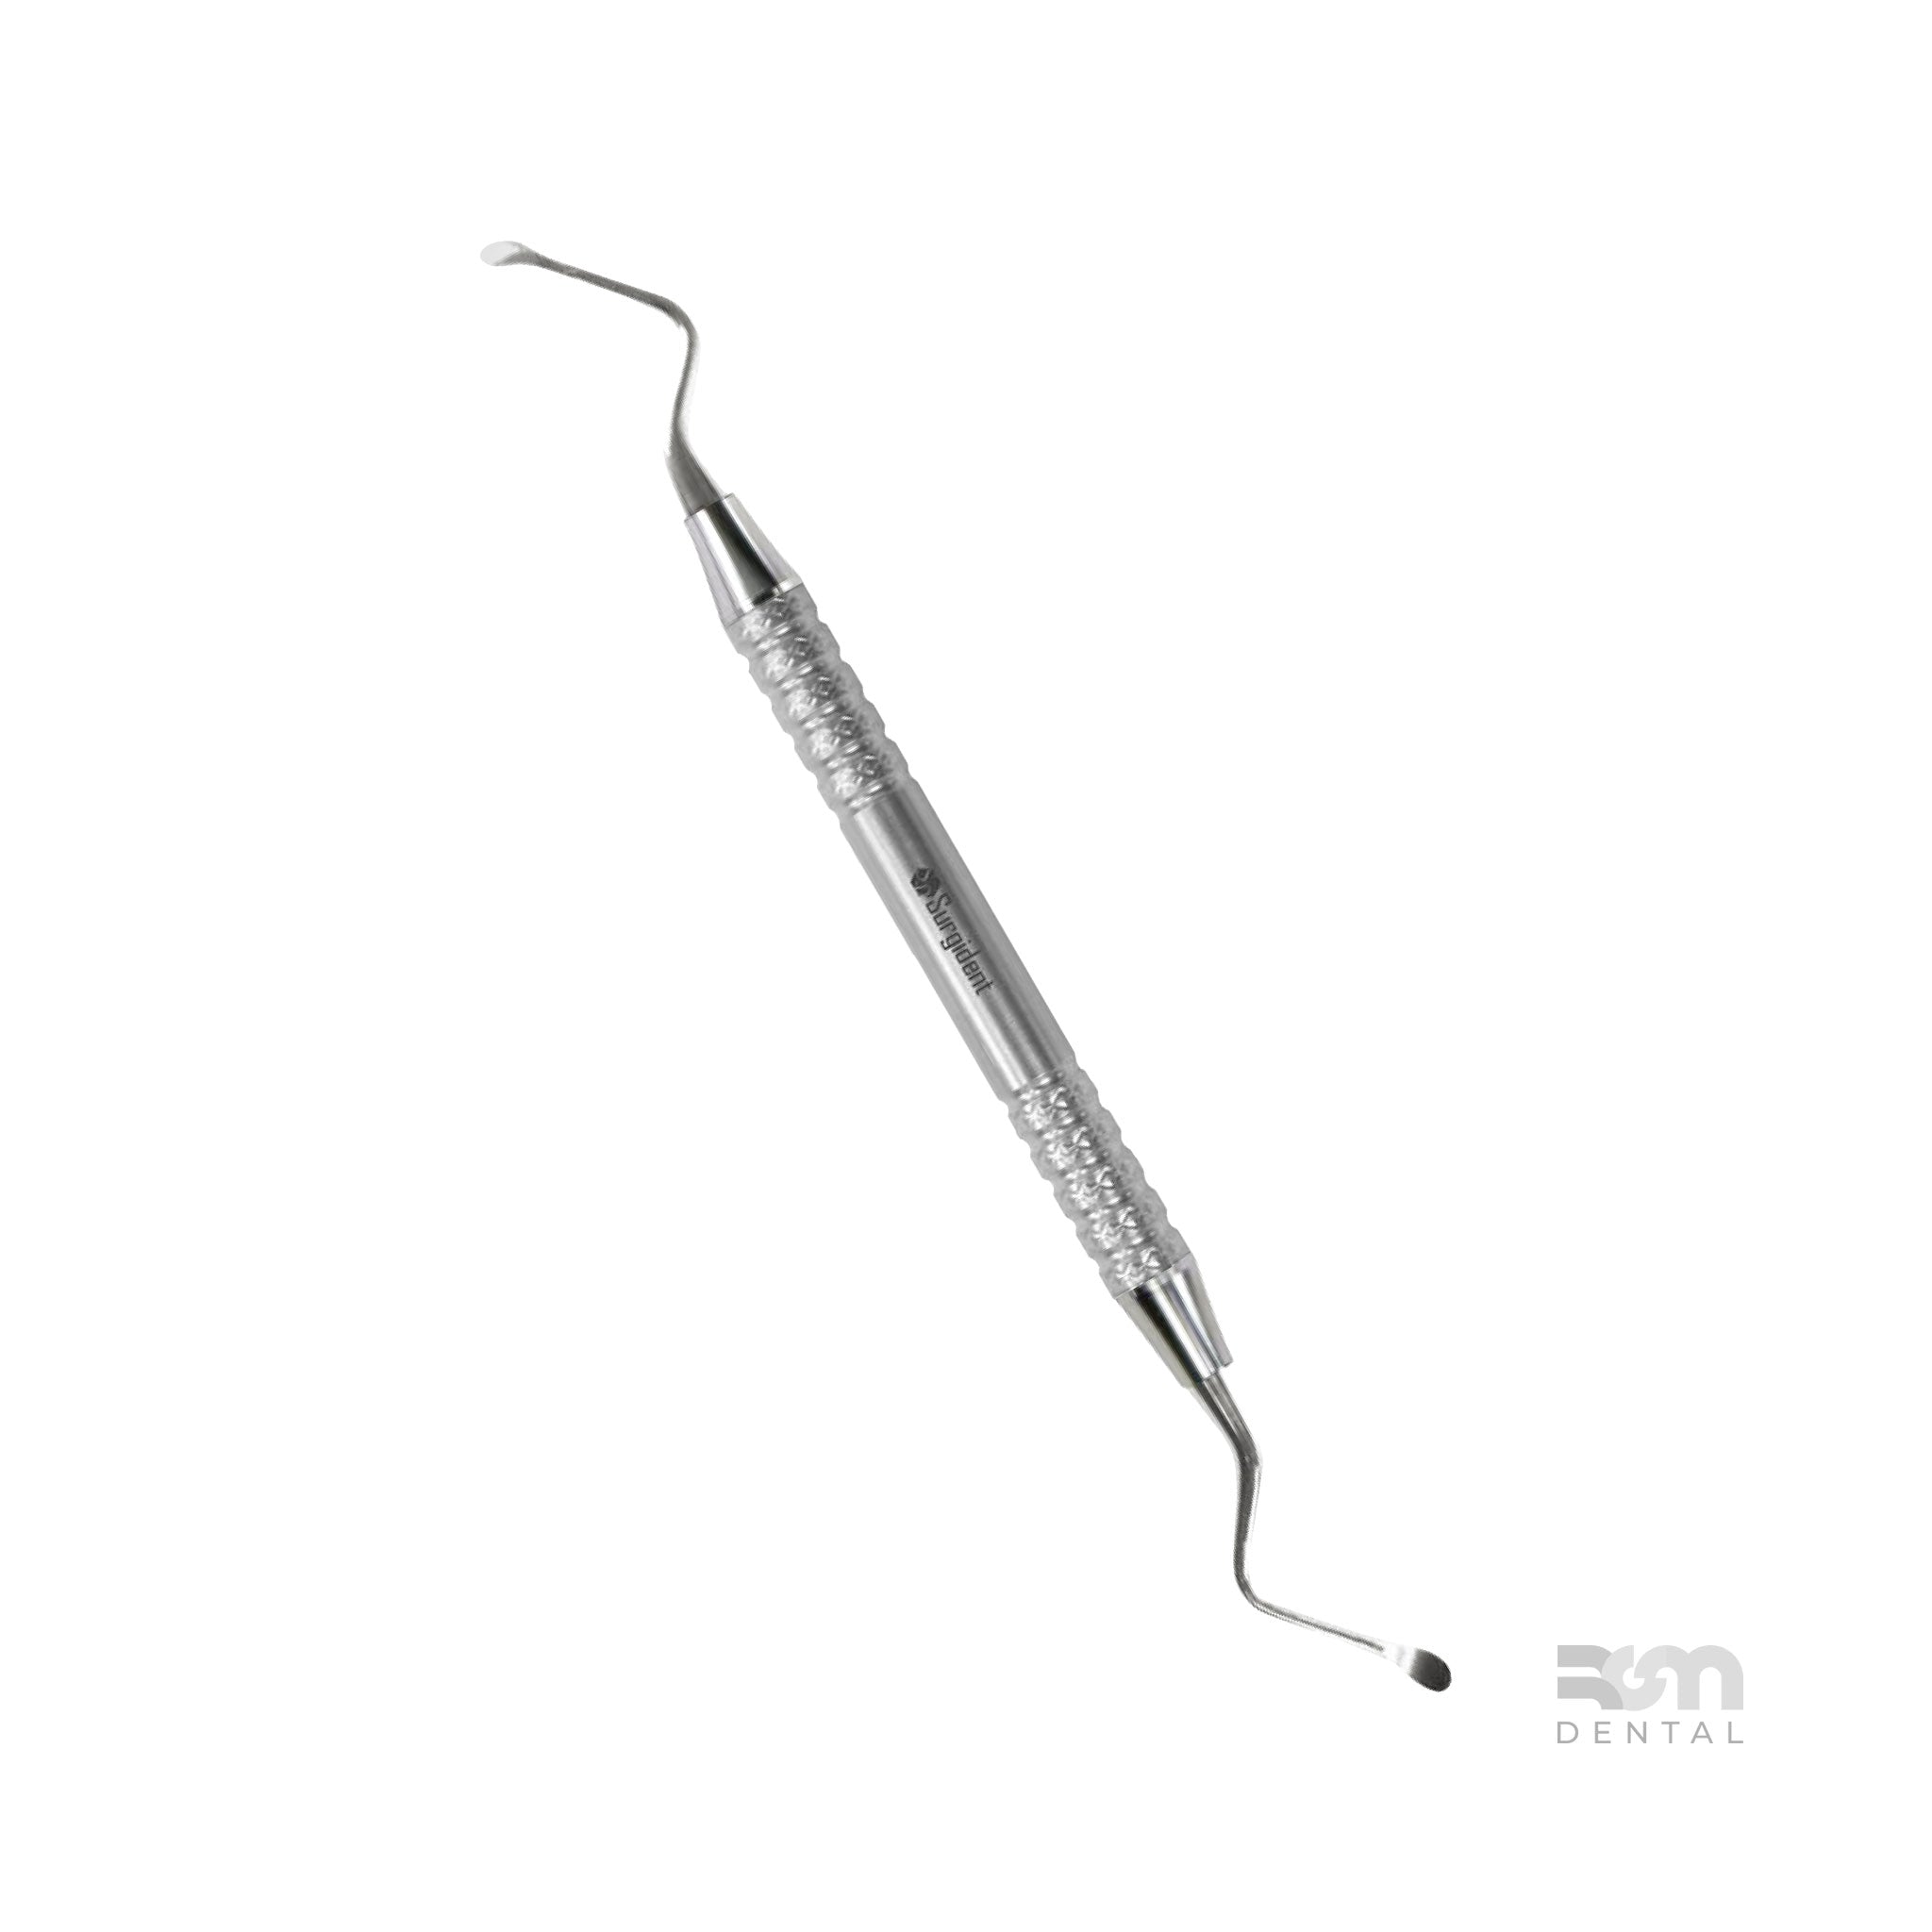 Surgical Curette CM12 : 4.0mm